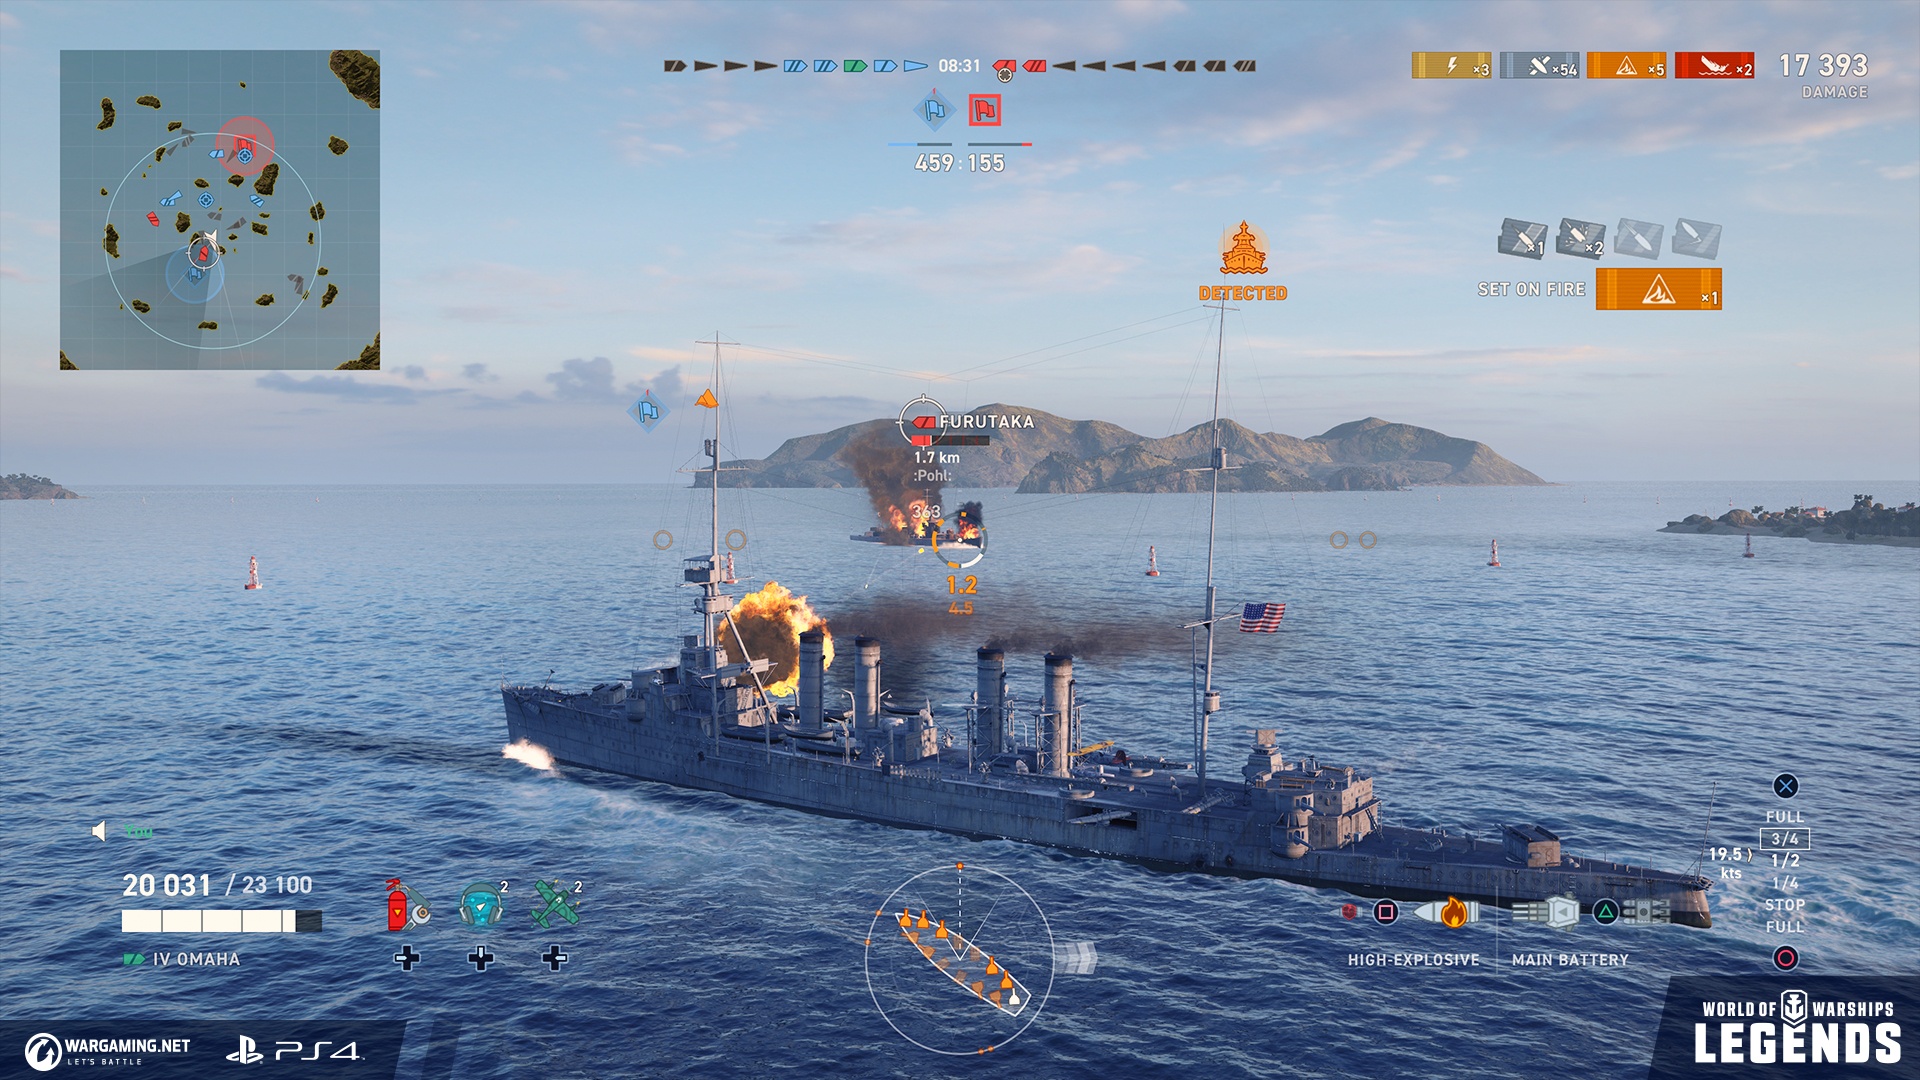 world of warships legendary upgrades